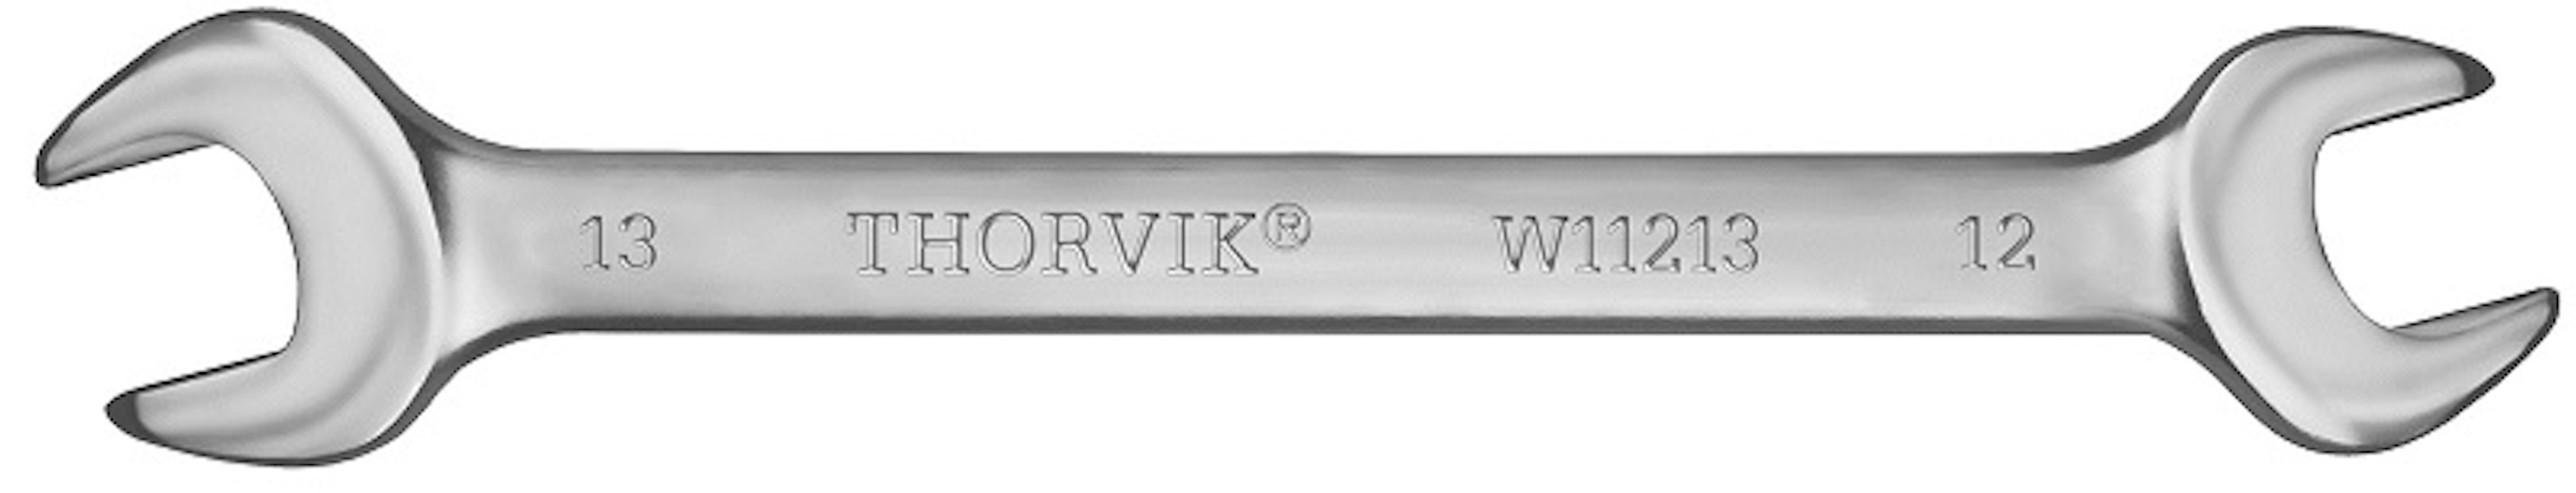 THORVIK W12123 Ключ гаечный рожковый серии ARC, 21х23 мм thorvik oew1213 ключ гаечный рожковый 12x13 мм